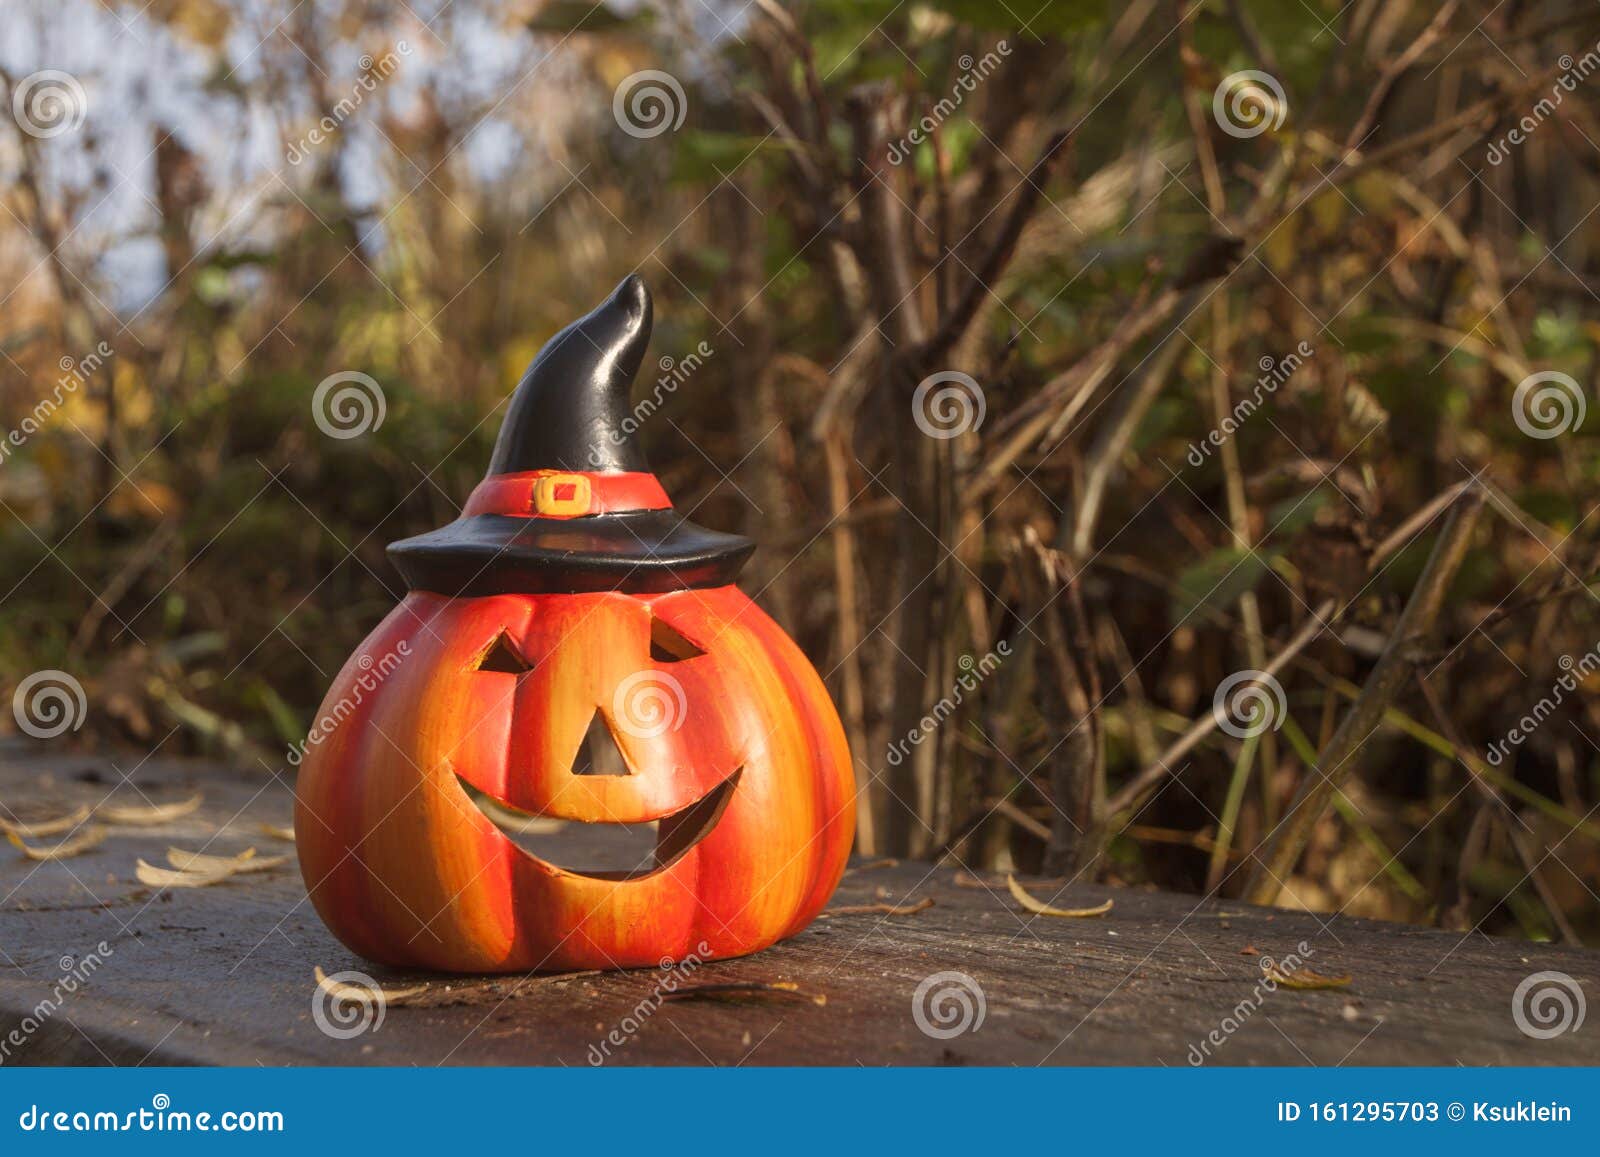 Halloween Pumpkin in Autumn Forest. Fall Season Mood Photo Stock Image